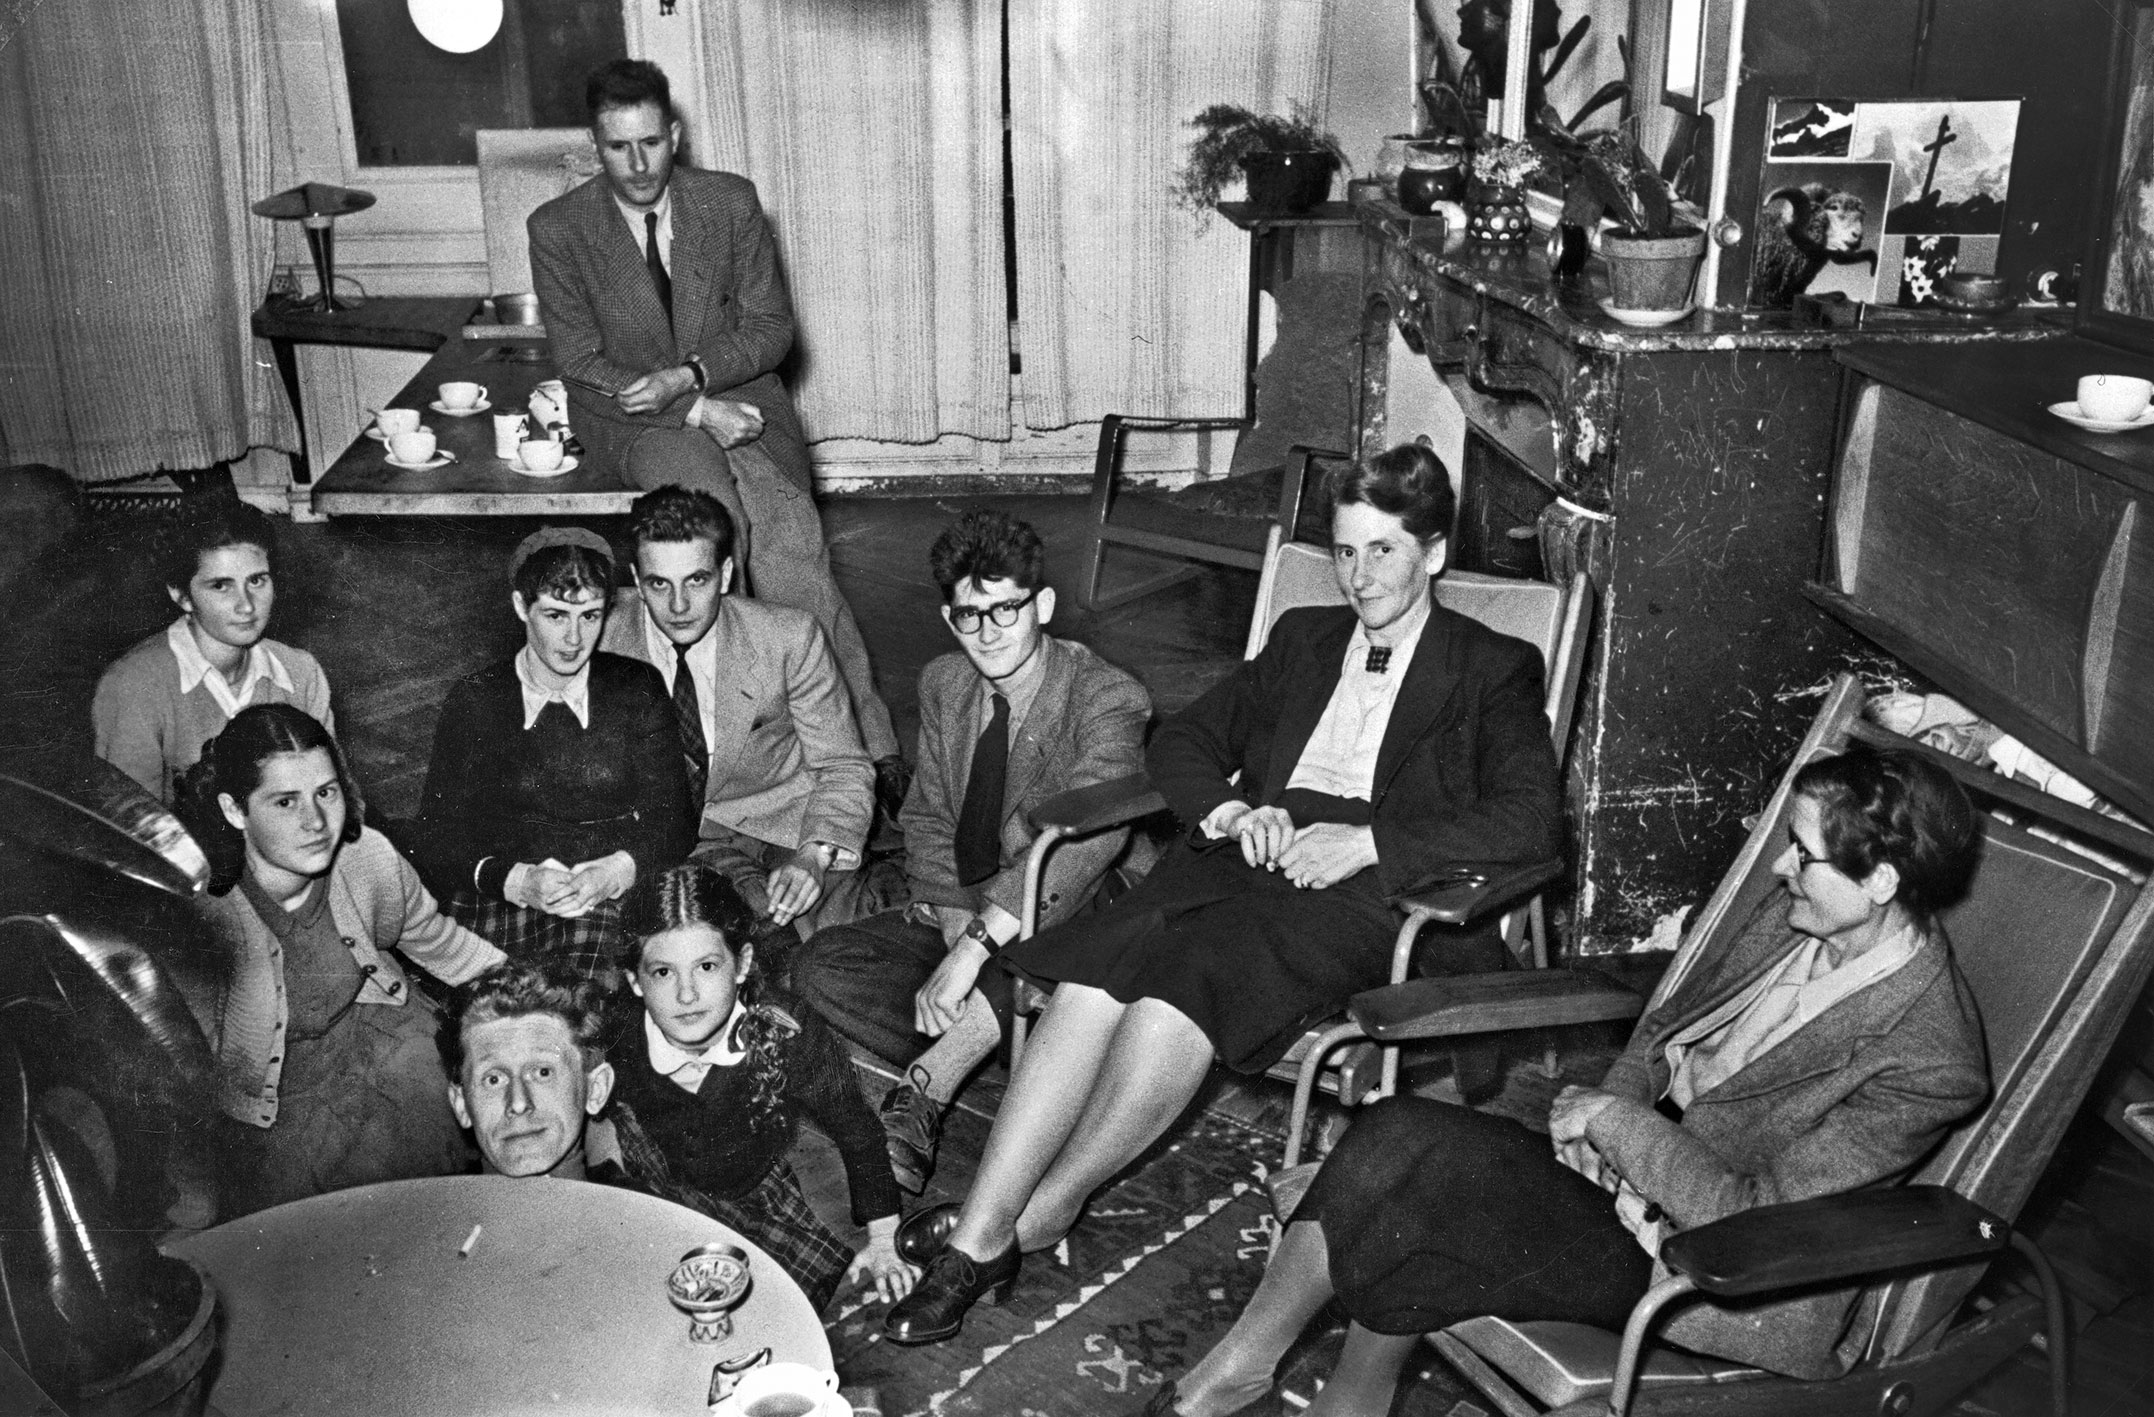 Appartement de la famille Prouvé, place de la Carrière, Nancy, c. 1949. La pièce à vivre avec des fauteuils Visiteur ; le fauteuil Visiteur à lattes du premier plan est une variante à dossier inclinable.